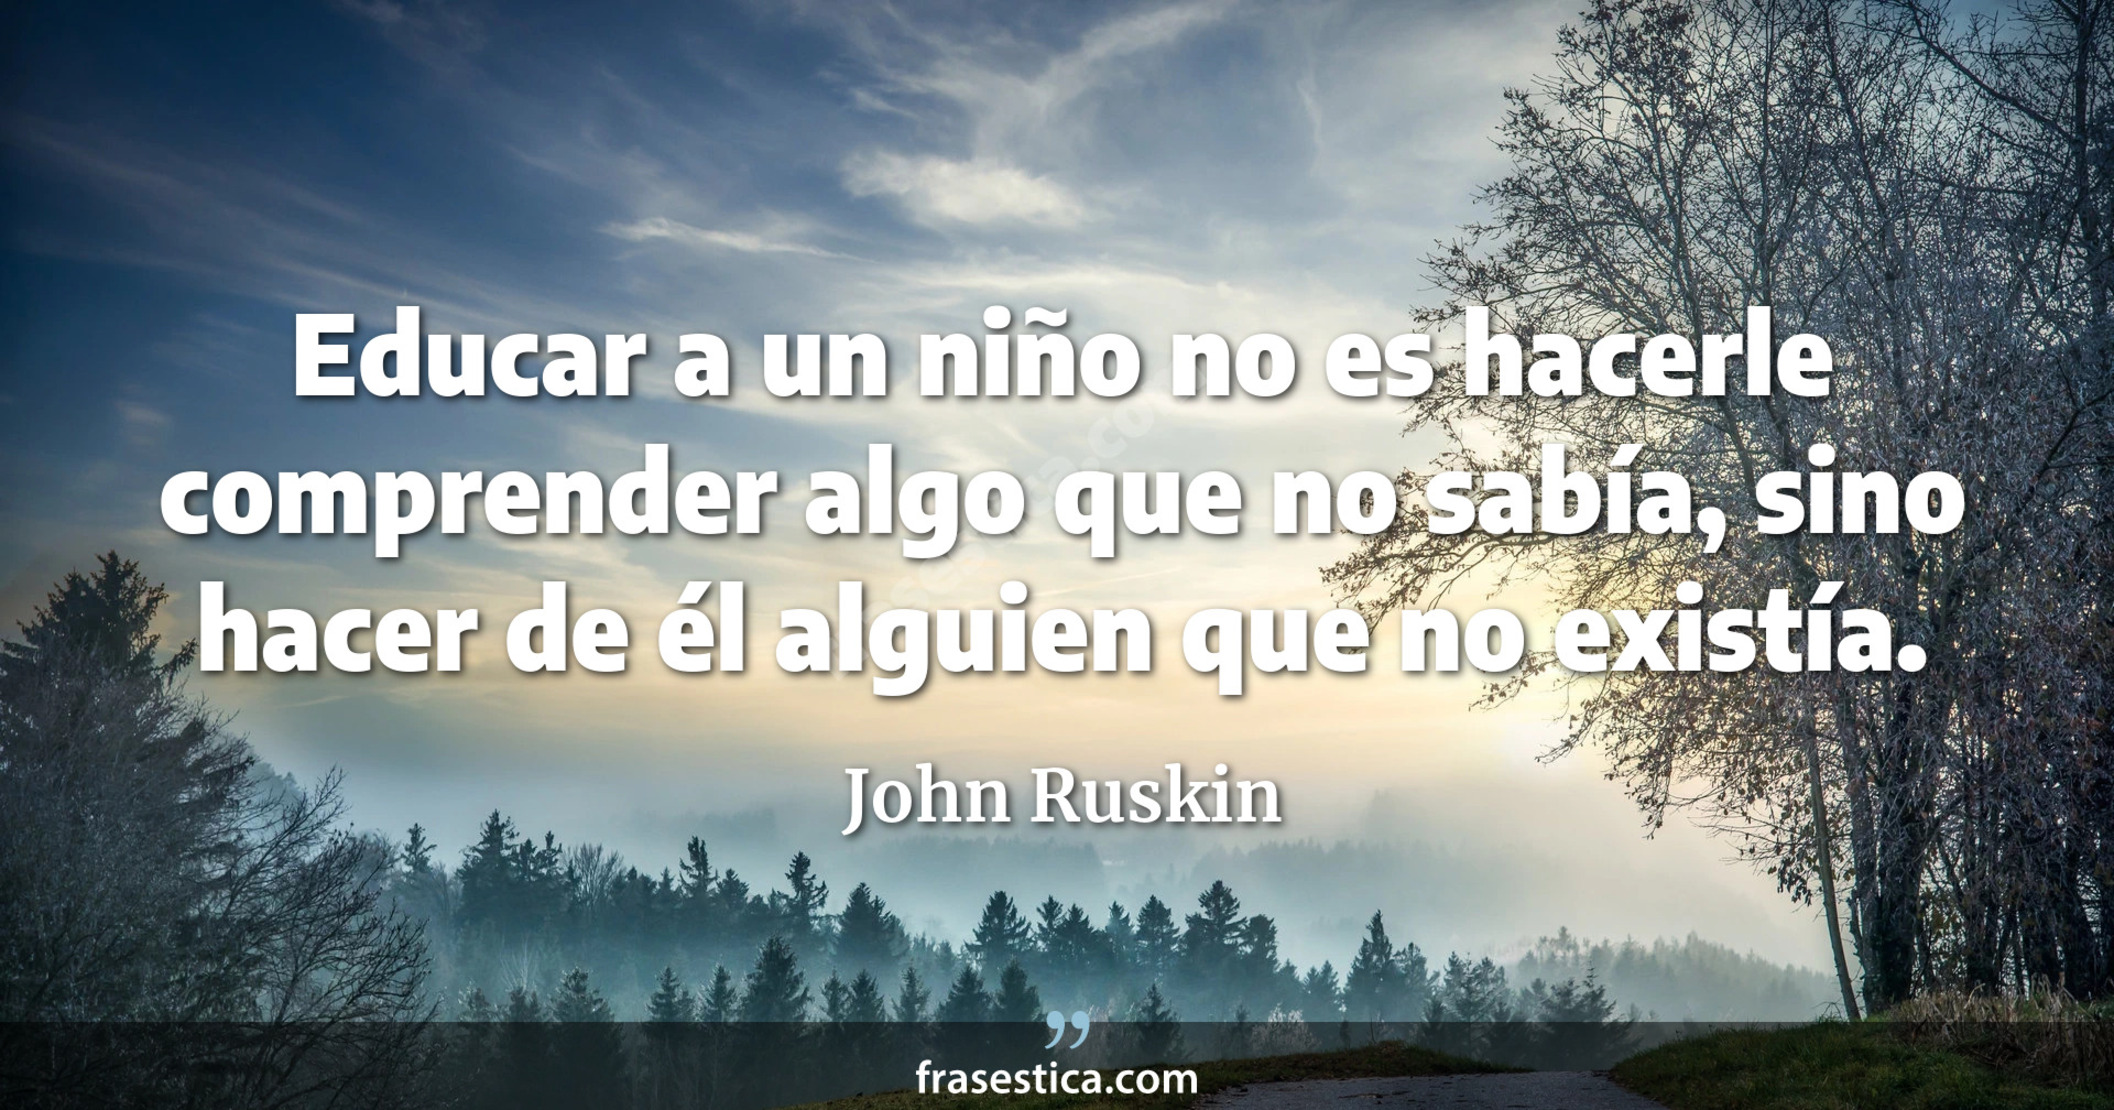 Educar a un niño no es hacerle comprender algo que no sabía, sino hacer de él alguien que no existía. - John Ruskin